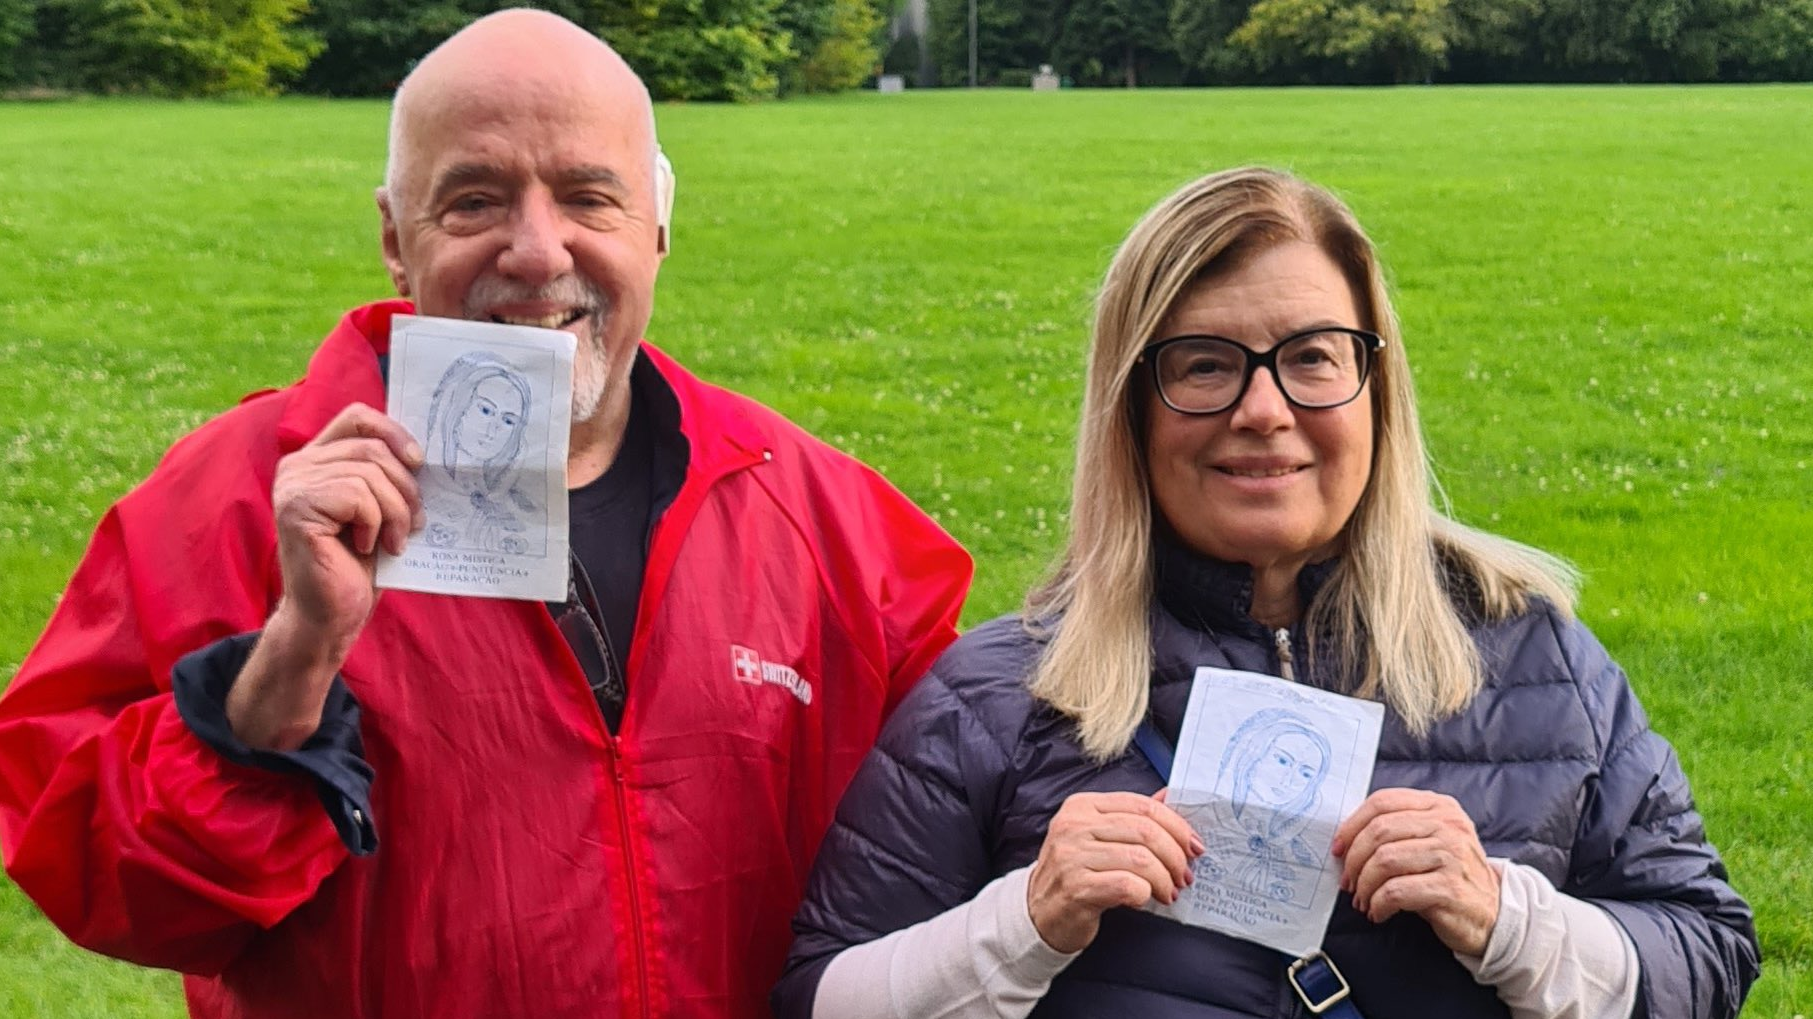 Paulo Coelho e sua mulher se oferecem para bancar festival barrado pelo governo - ISTOÉ Independente